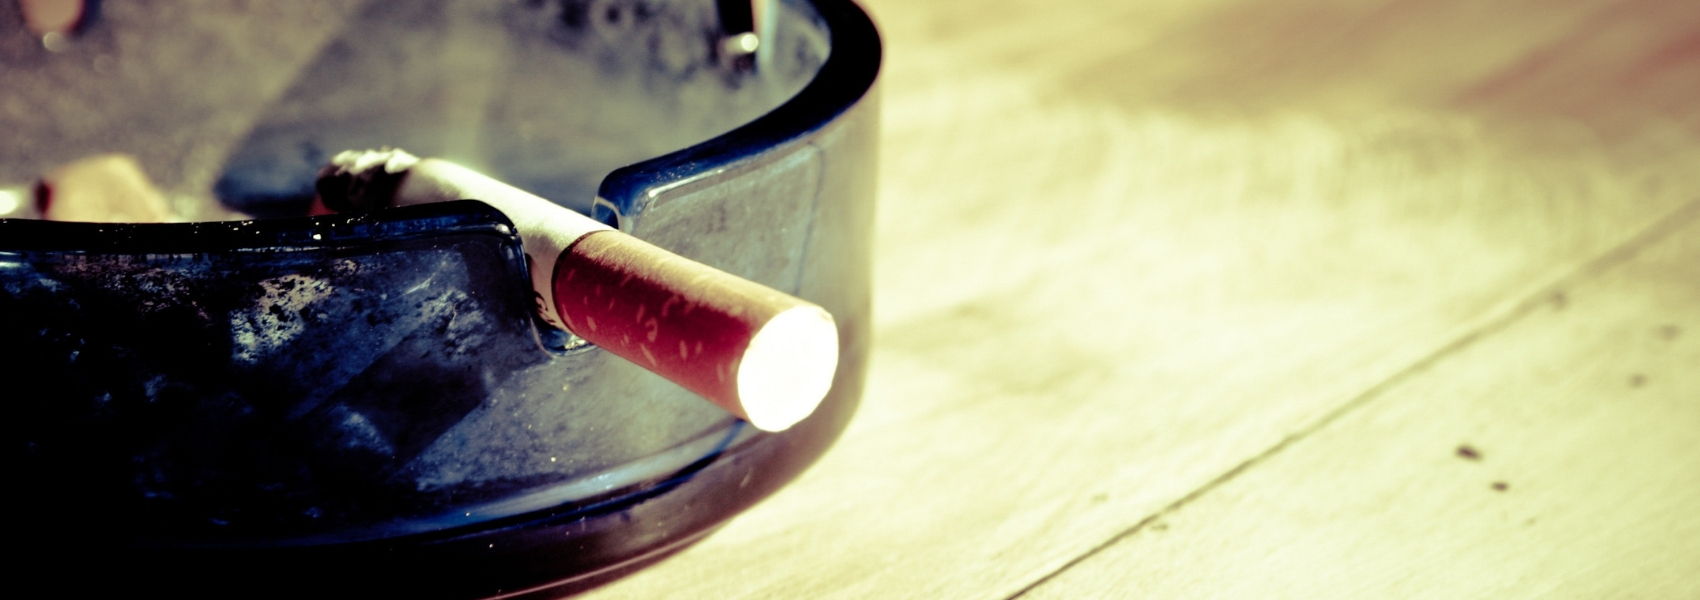 fumo passivo aumenta riscos